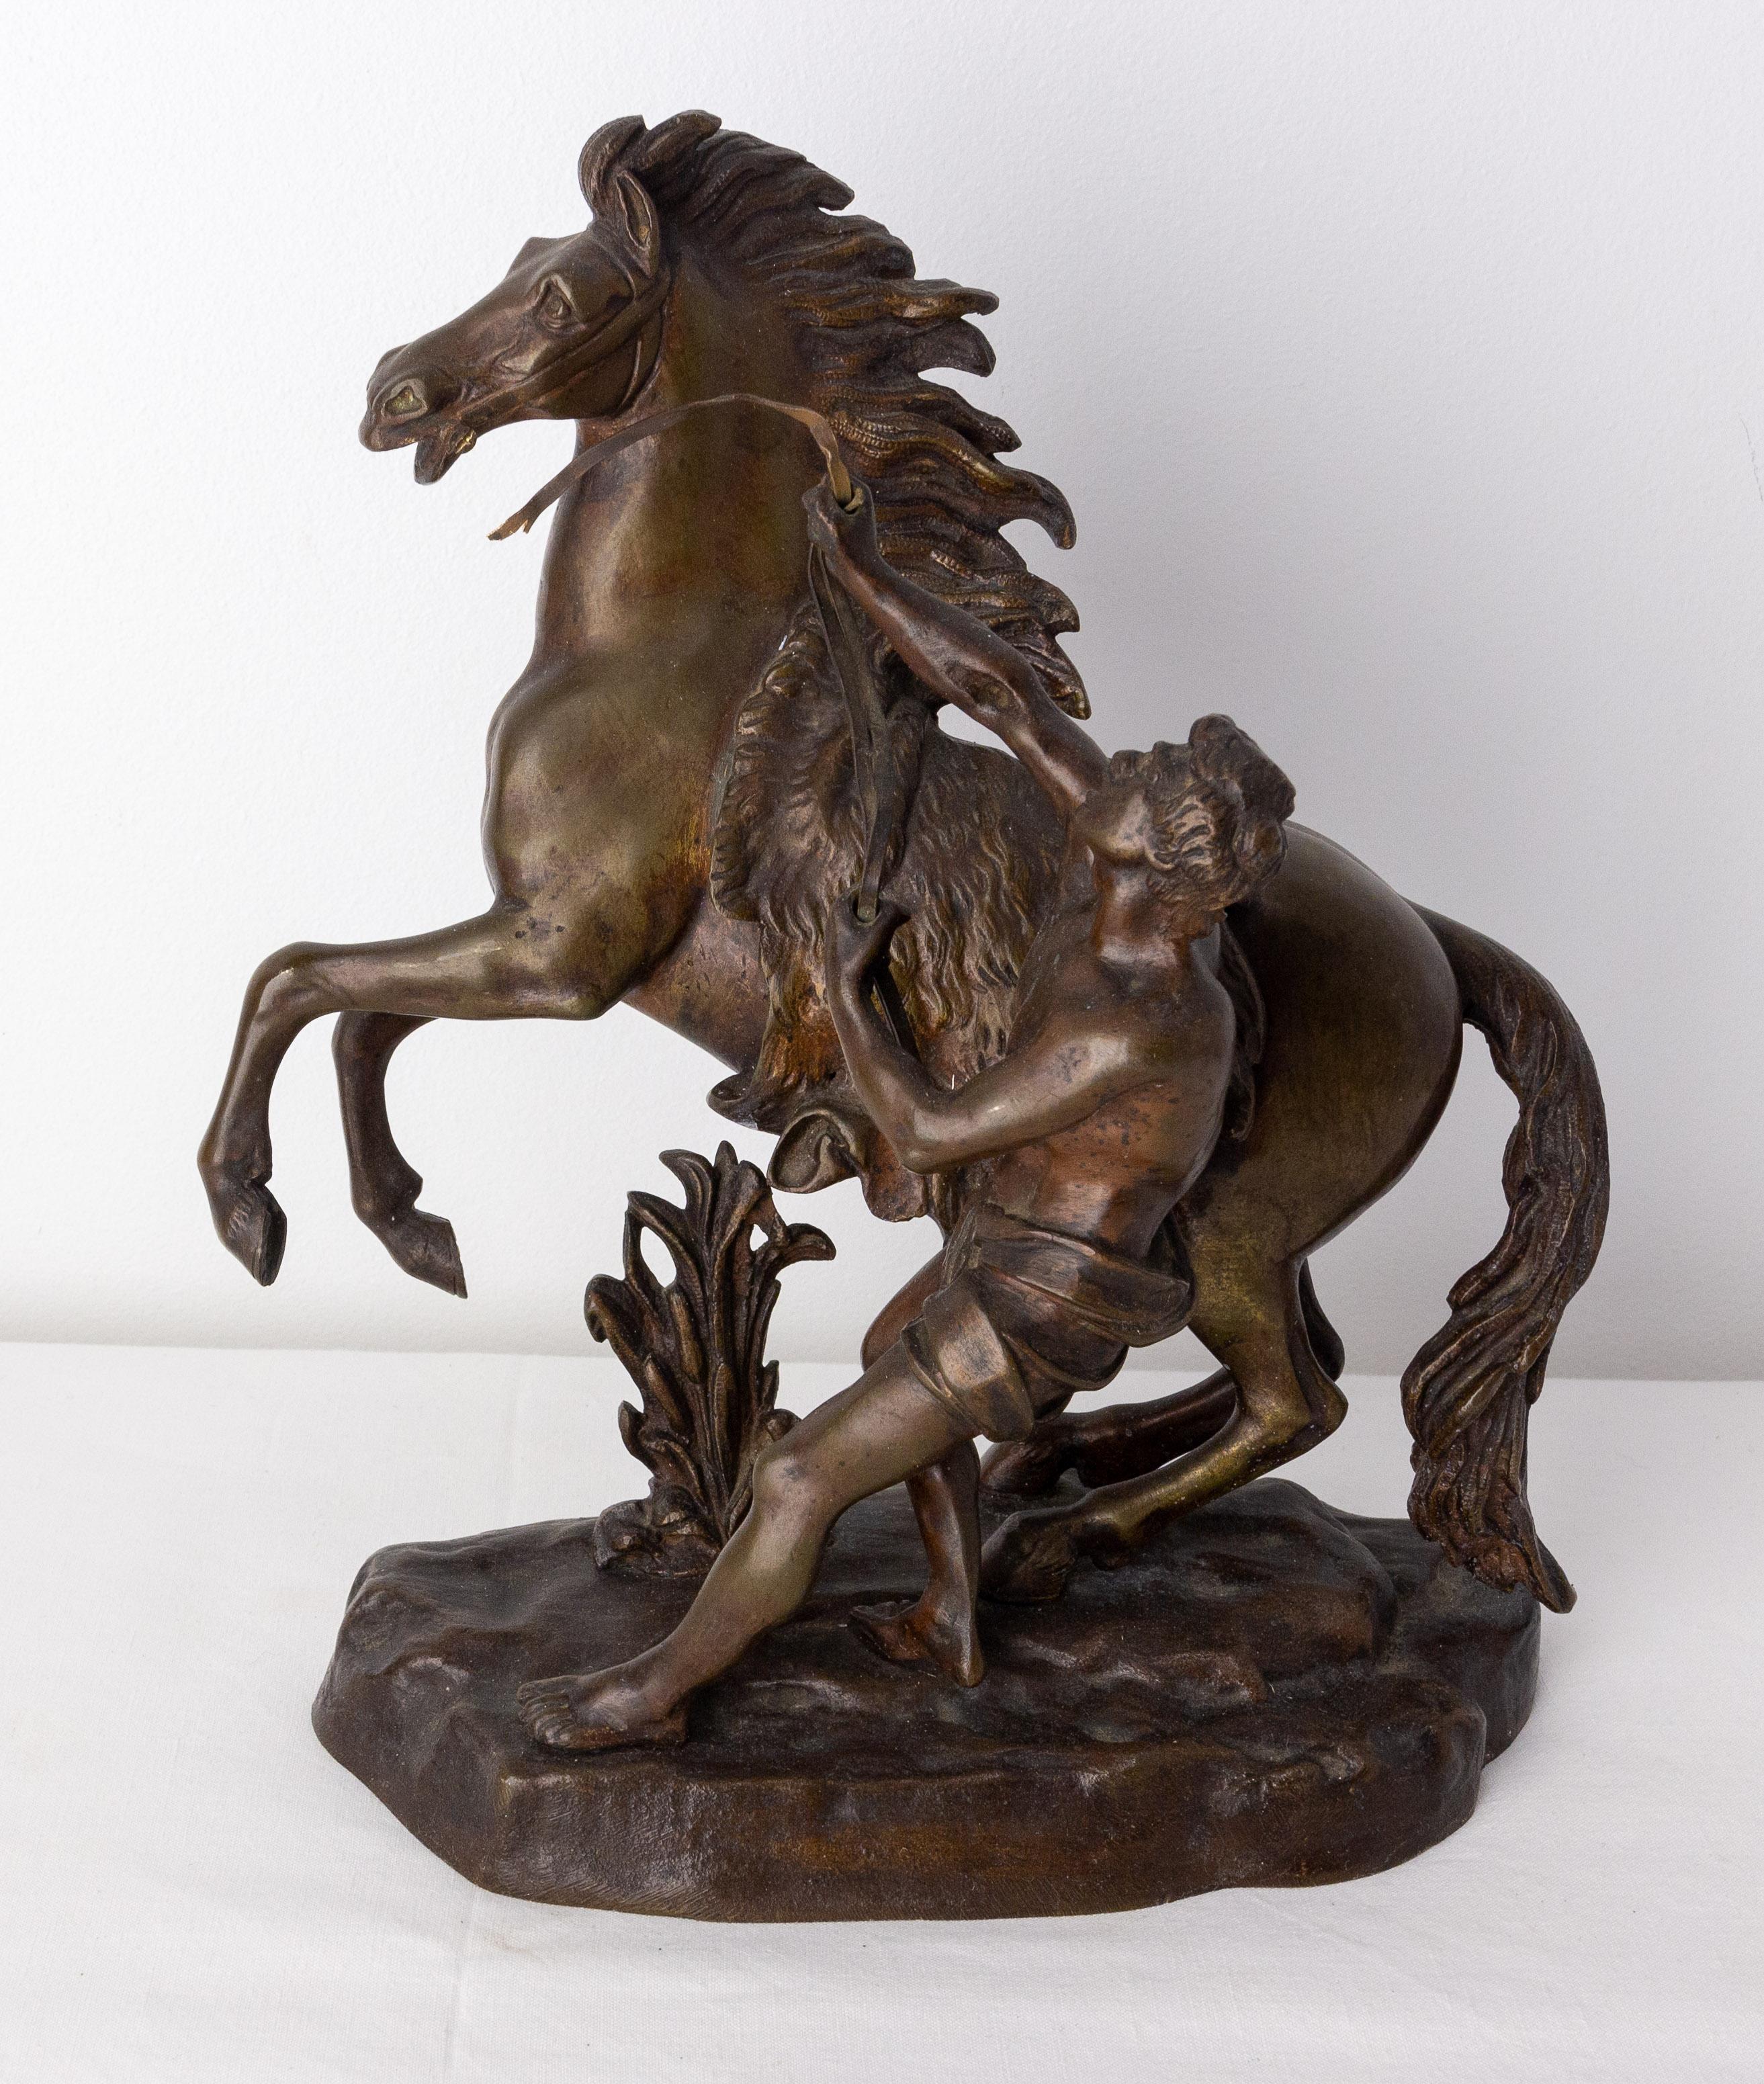 Bronzestatue im Stil von Guillaume Marly.
Die Pferde von Marly wurden von Ludwig XV. bei dem Bildhauer Guillaume Coustou in Auftrag gegeben, um den Eingang des Schlossparks von Marly zu schmücken. Im Jahr 1794 wurden die Marmorstatuen aus Carrara